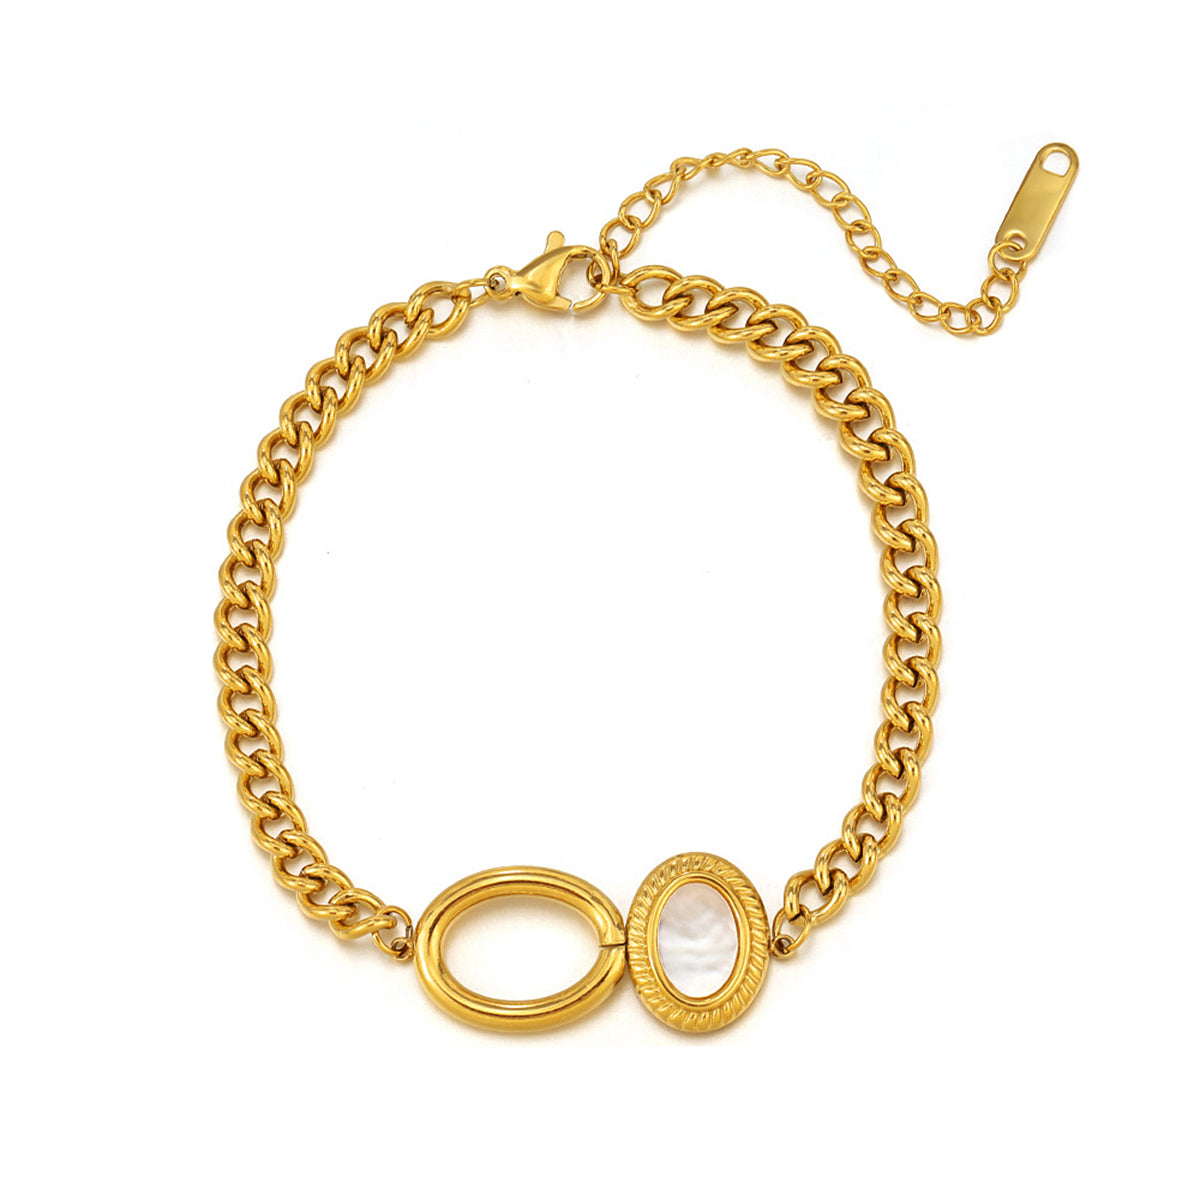 Shell & 18K Gold-Plated Oval Charm Bracelet